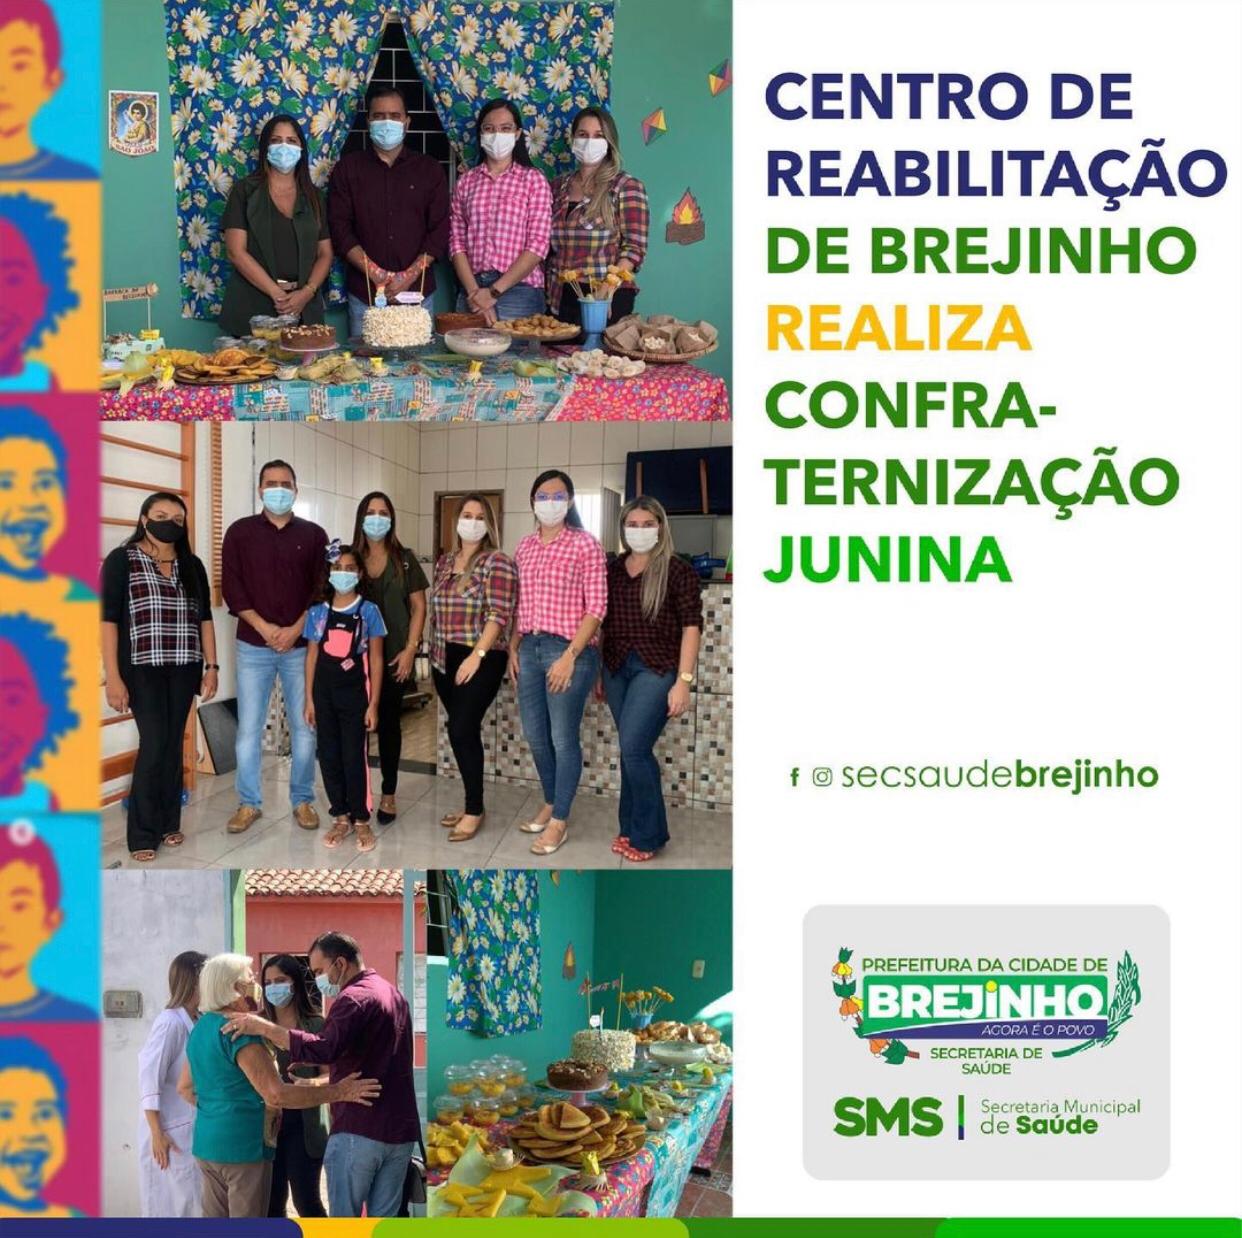 You are currently viewing Centro de reabilitação realizou confraternização junina em Brejinho